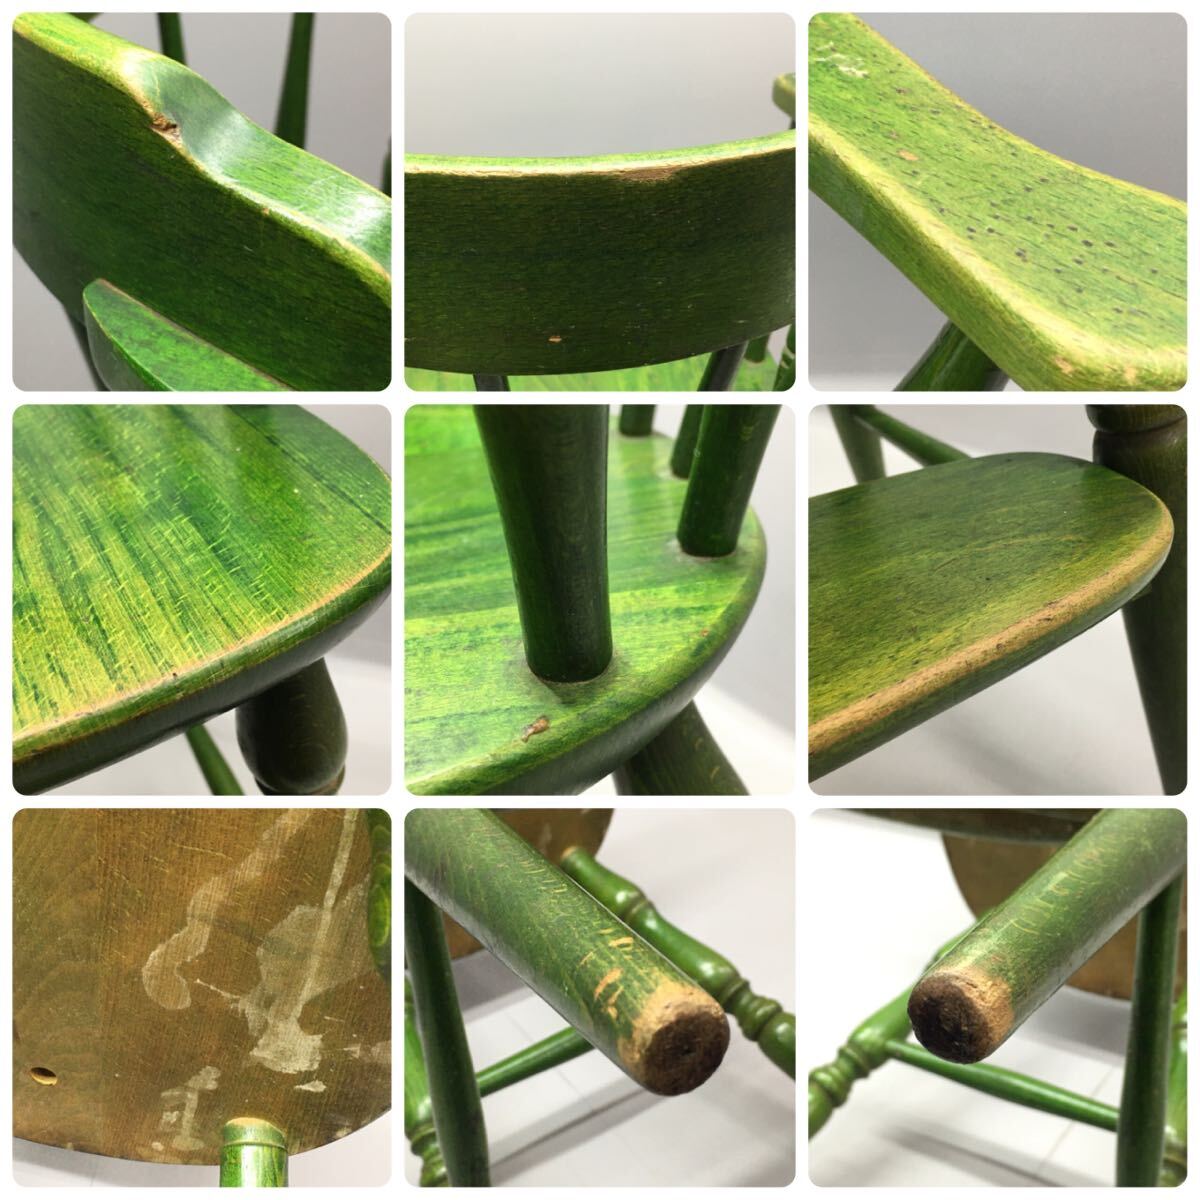 SU■ 飛騨産業 キツツキ ベビーアームチェア 木製 緑 グリーン 子供椅子 ハイチェア ウィンザーチェア ベビーチェア レトロ アンティーク